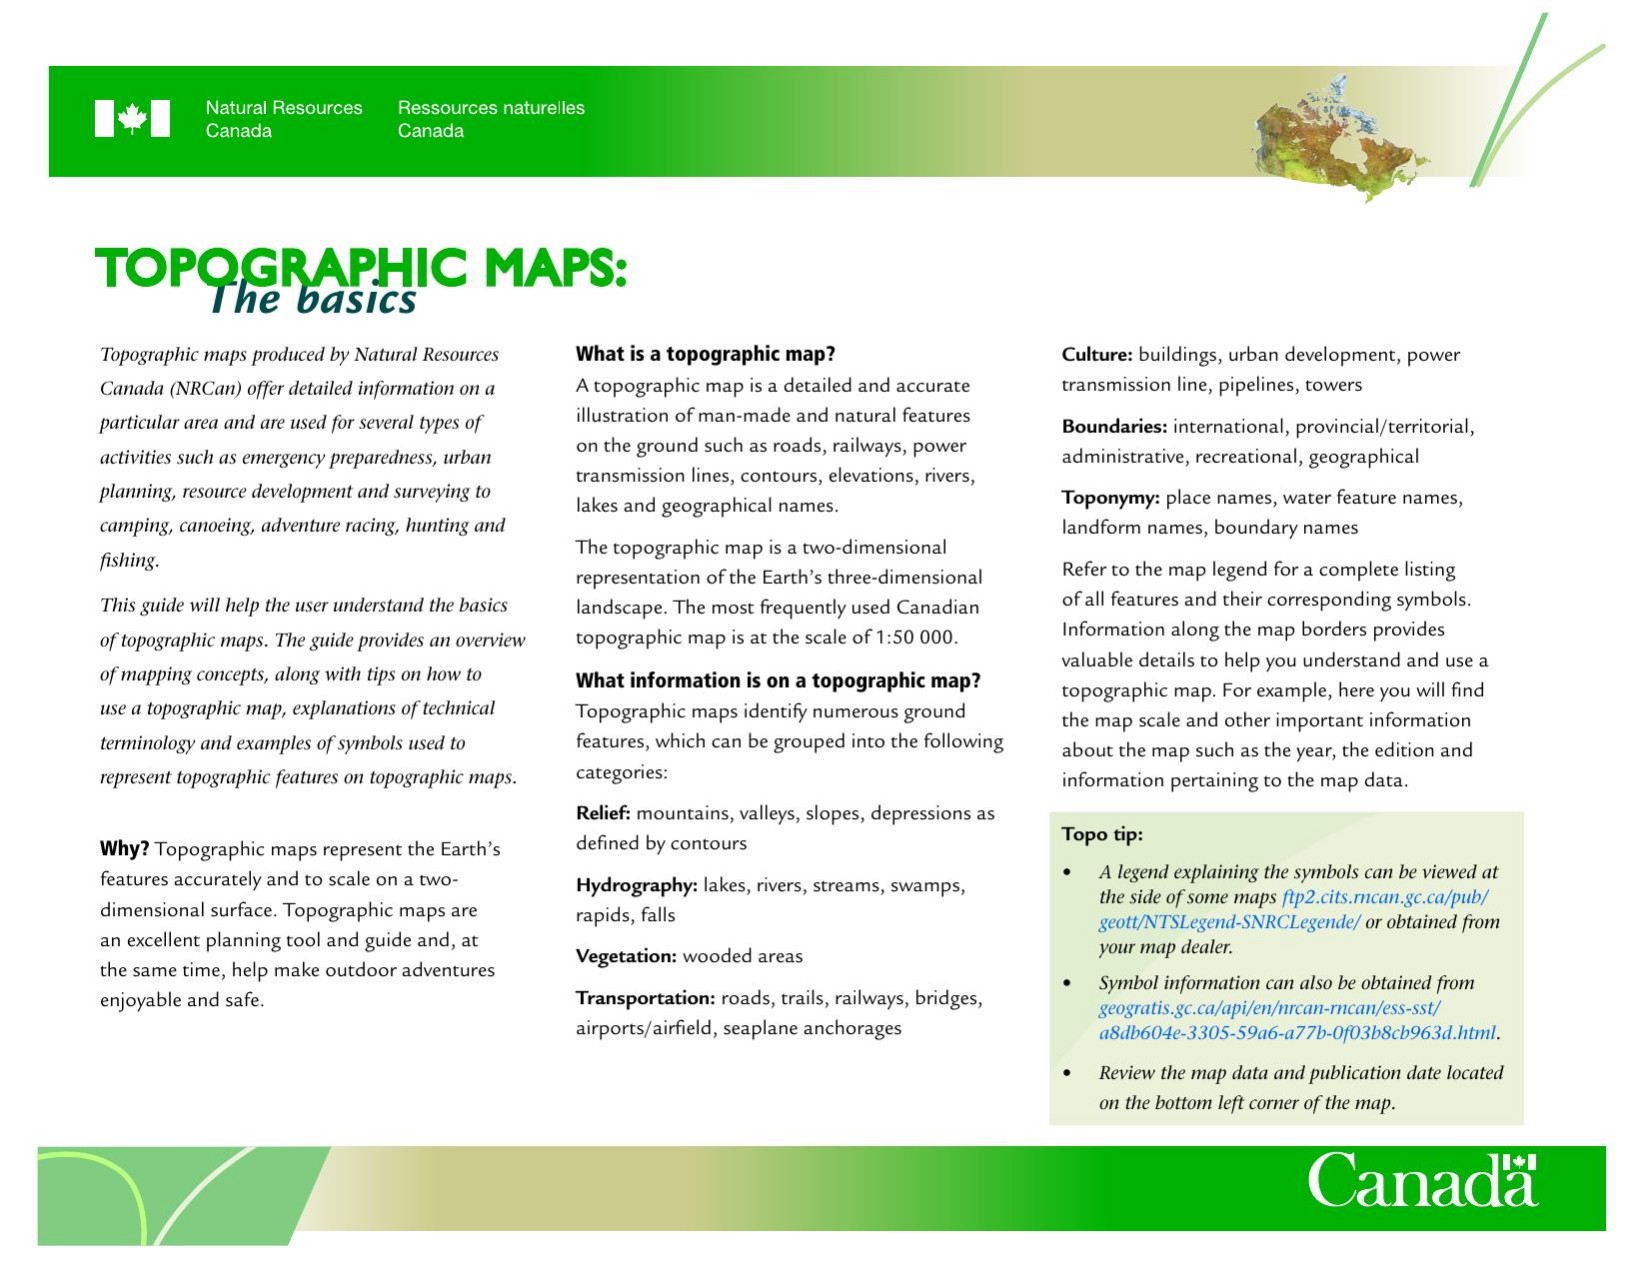 Topographic Maps: The basics